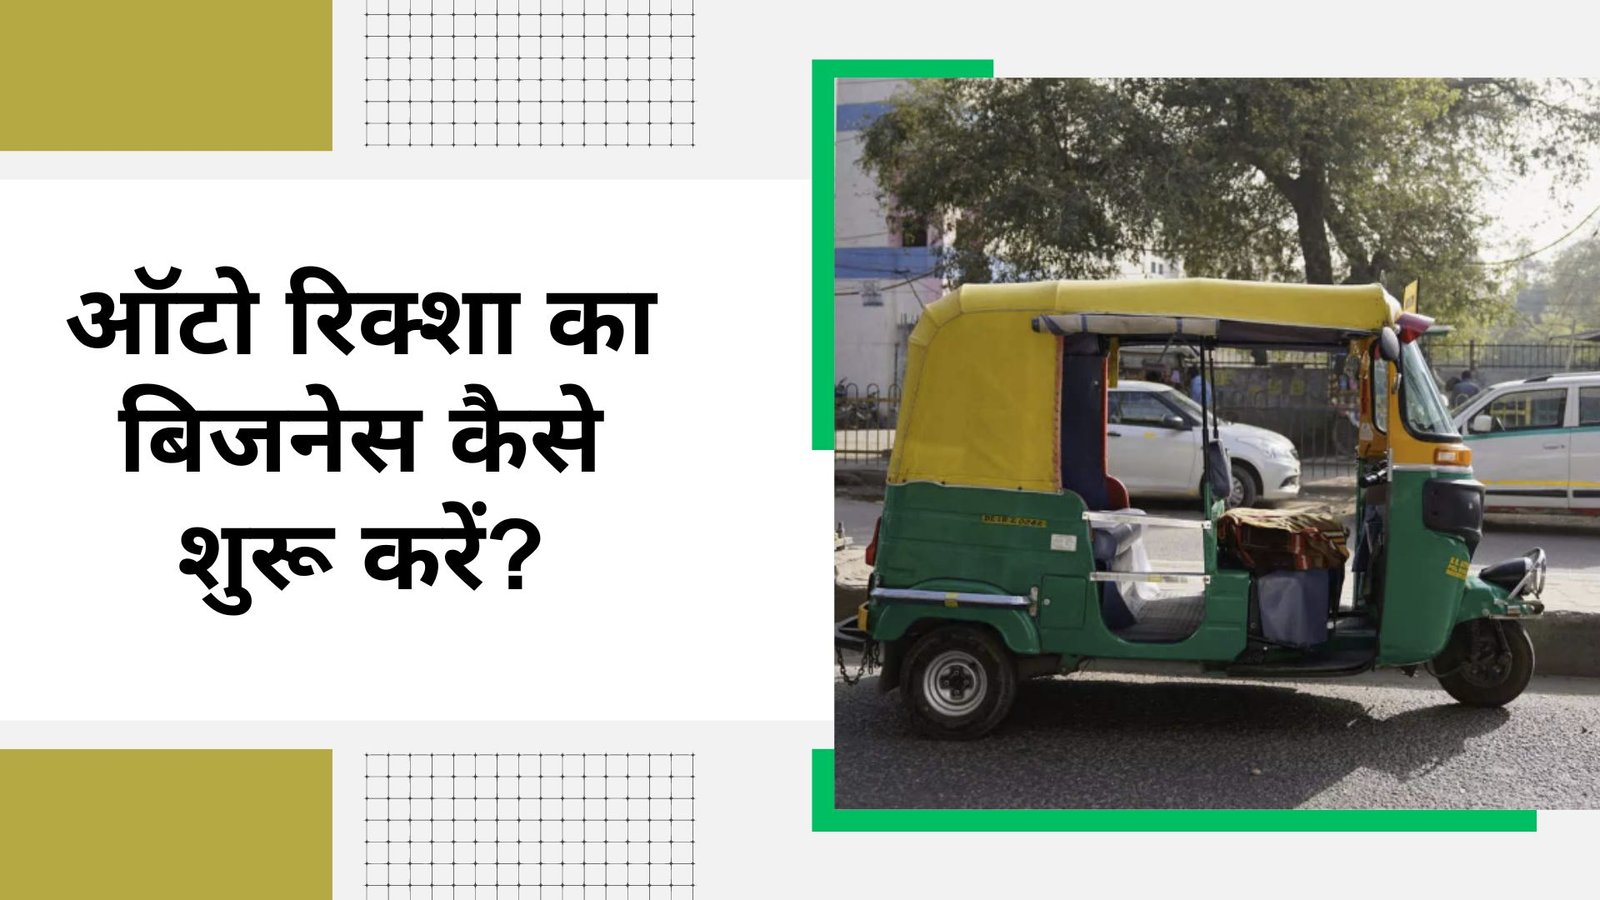 ऑटो रिक्शा का बिजनेस कैसे शुरू करें?